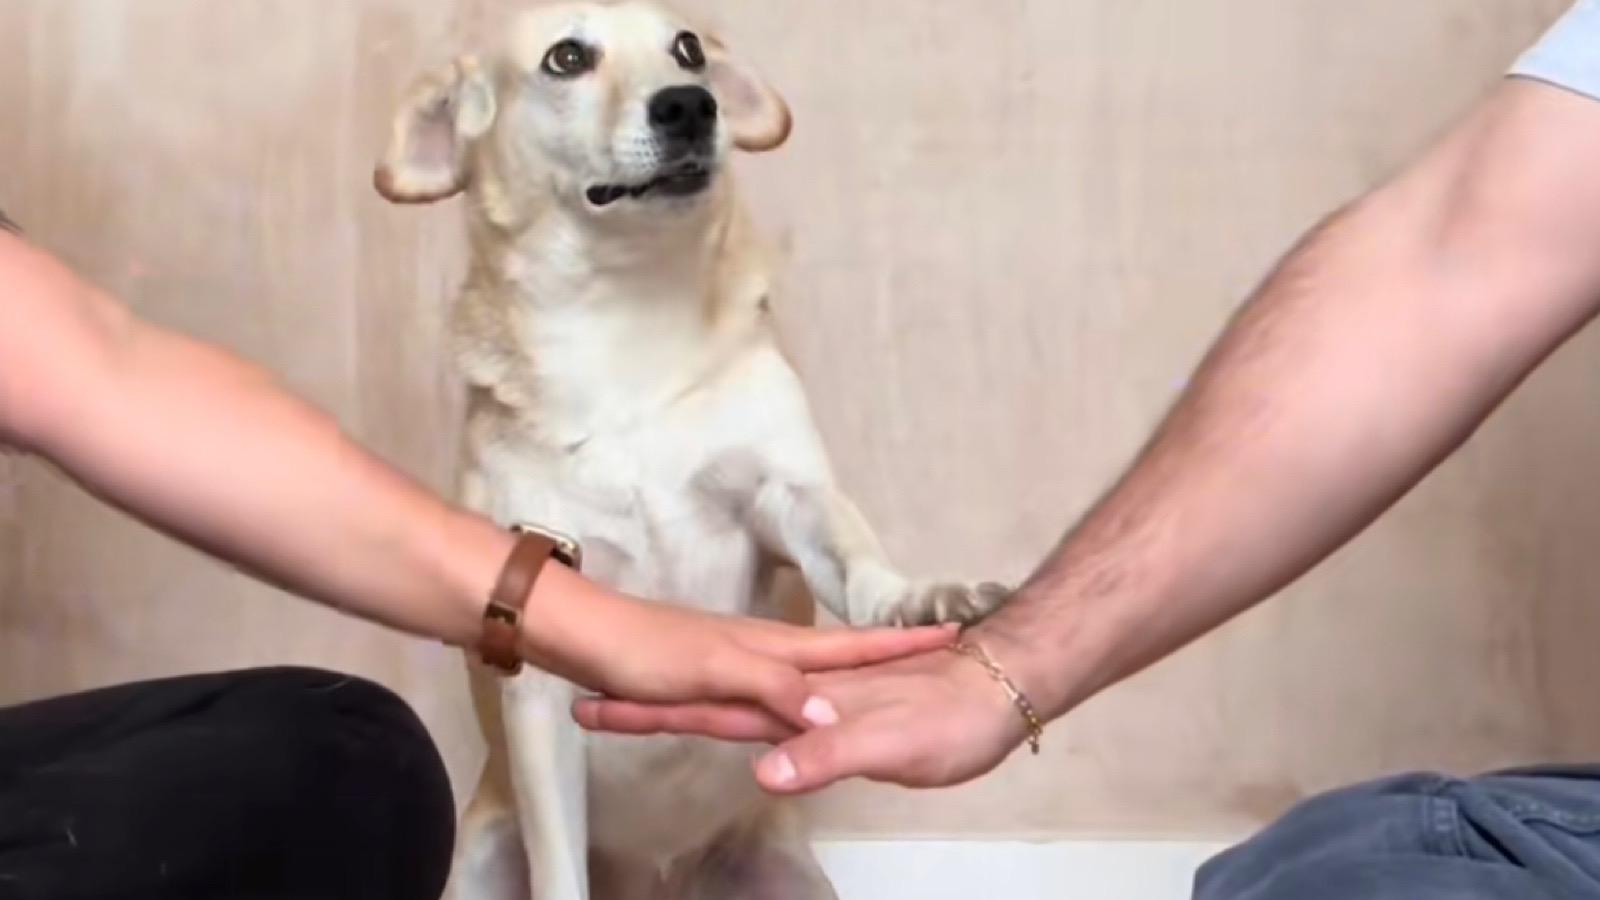 tiktok's hands in dog trend